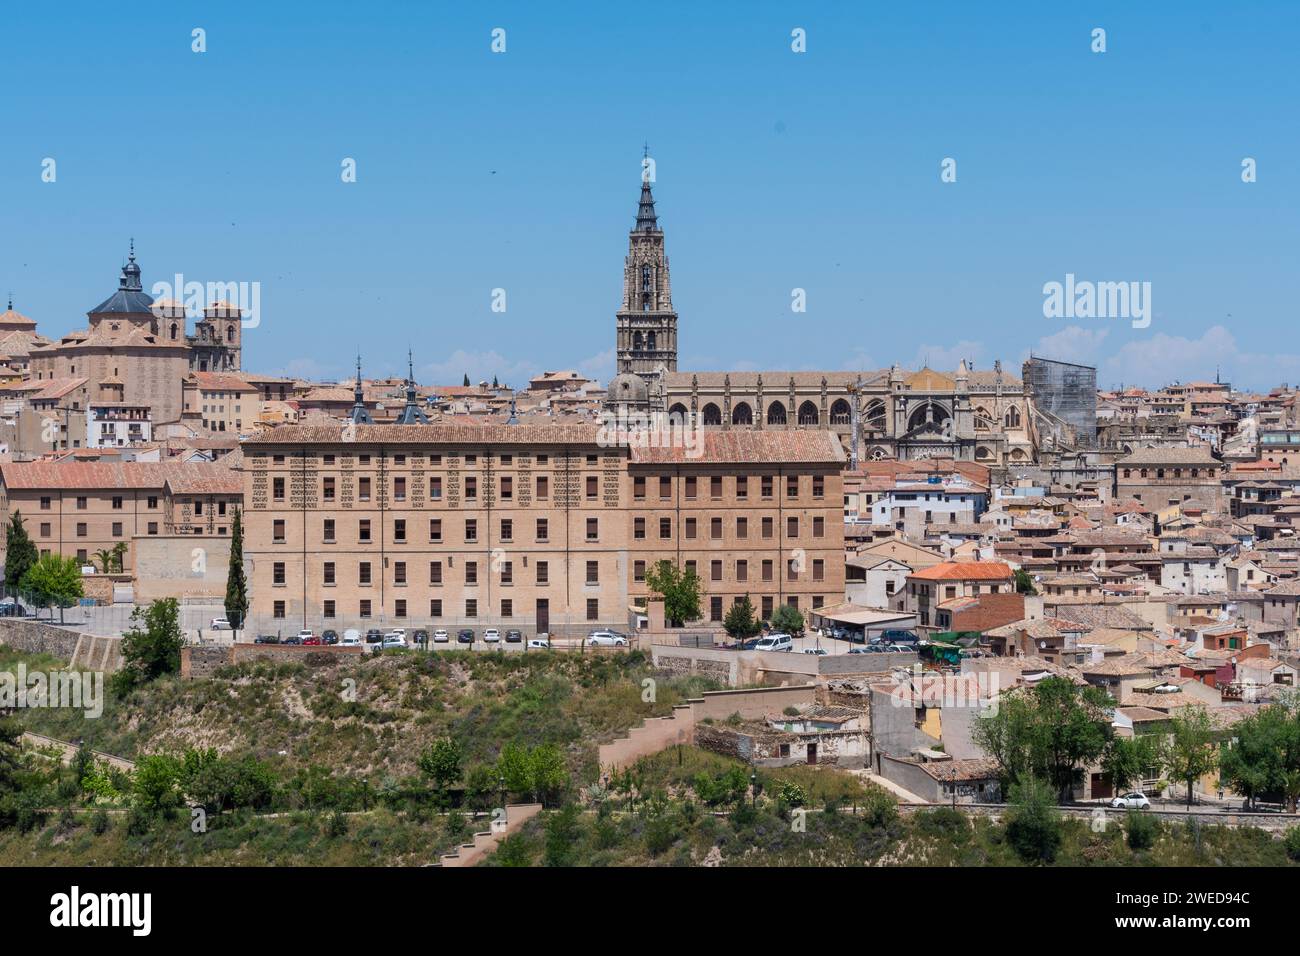 Cattura la bellezza senza tempo di Toledo, Spagna: Un paesaggio panoramico che mostra il fascino storico e lo splendore architettonico Foto Stock